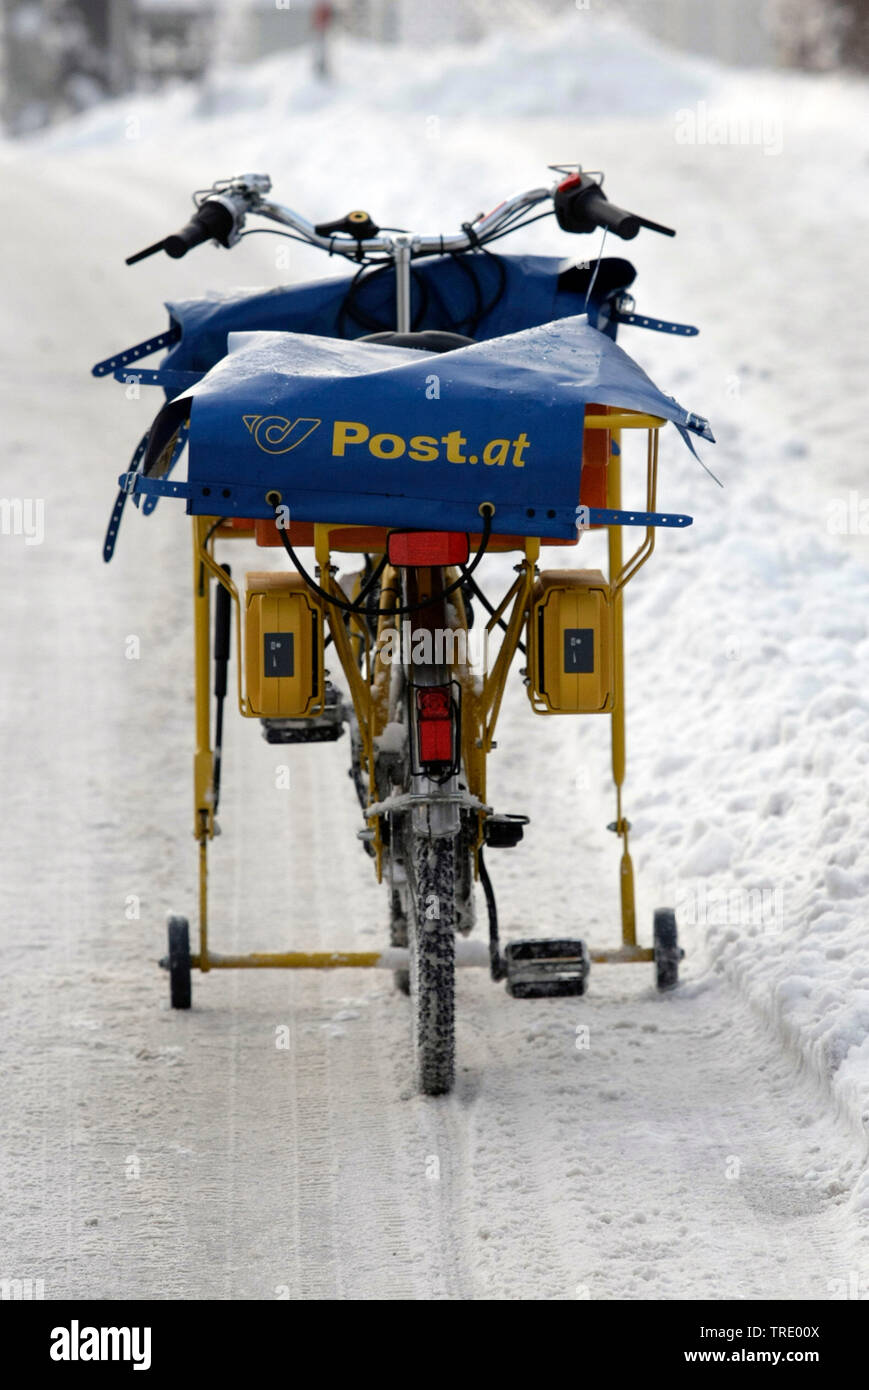 Le vélo de facteur de la Poste fédérale autrichienne sur une route couverte de neige, Autriche Banque D'Images